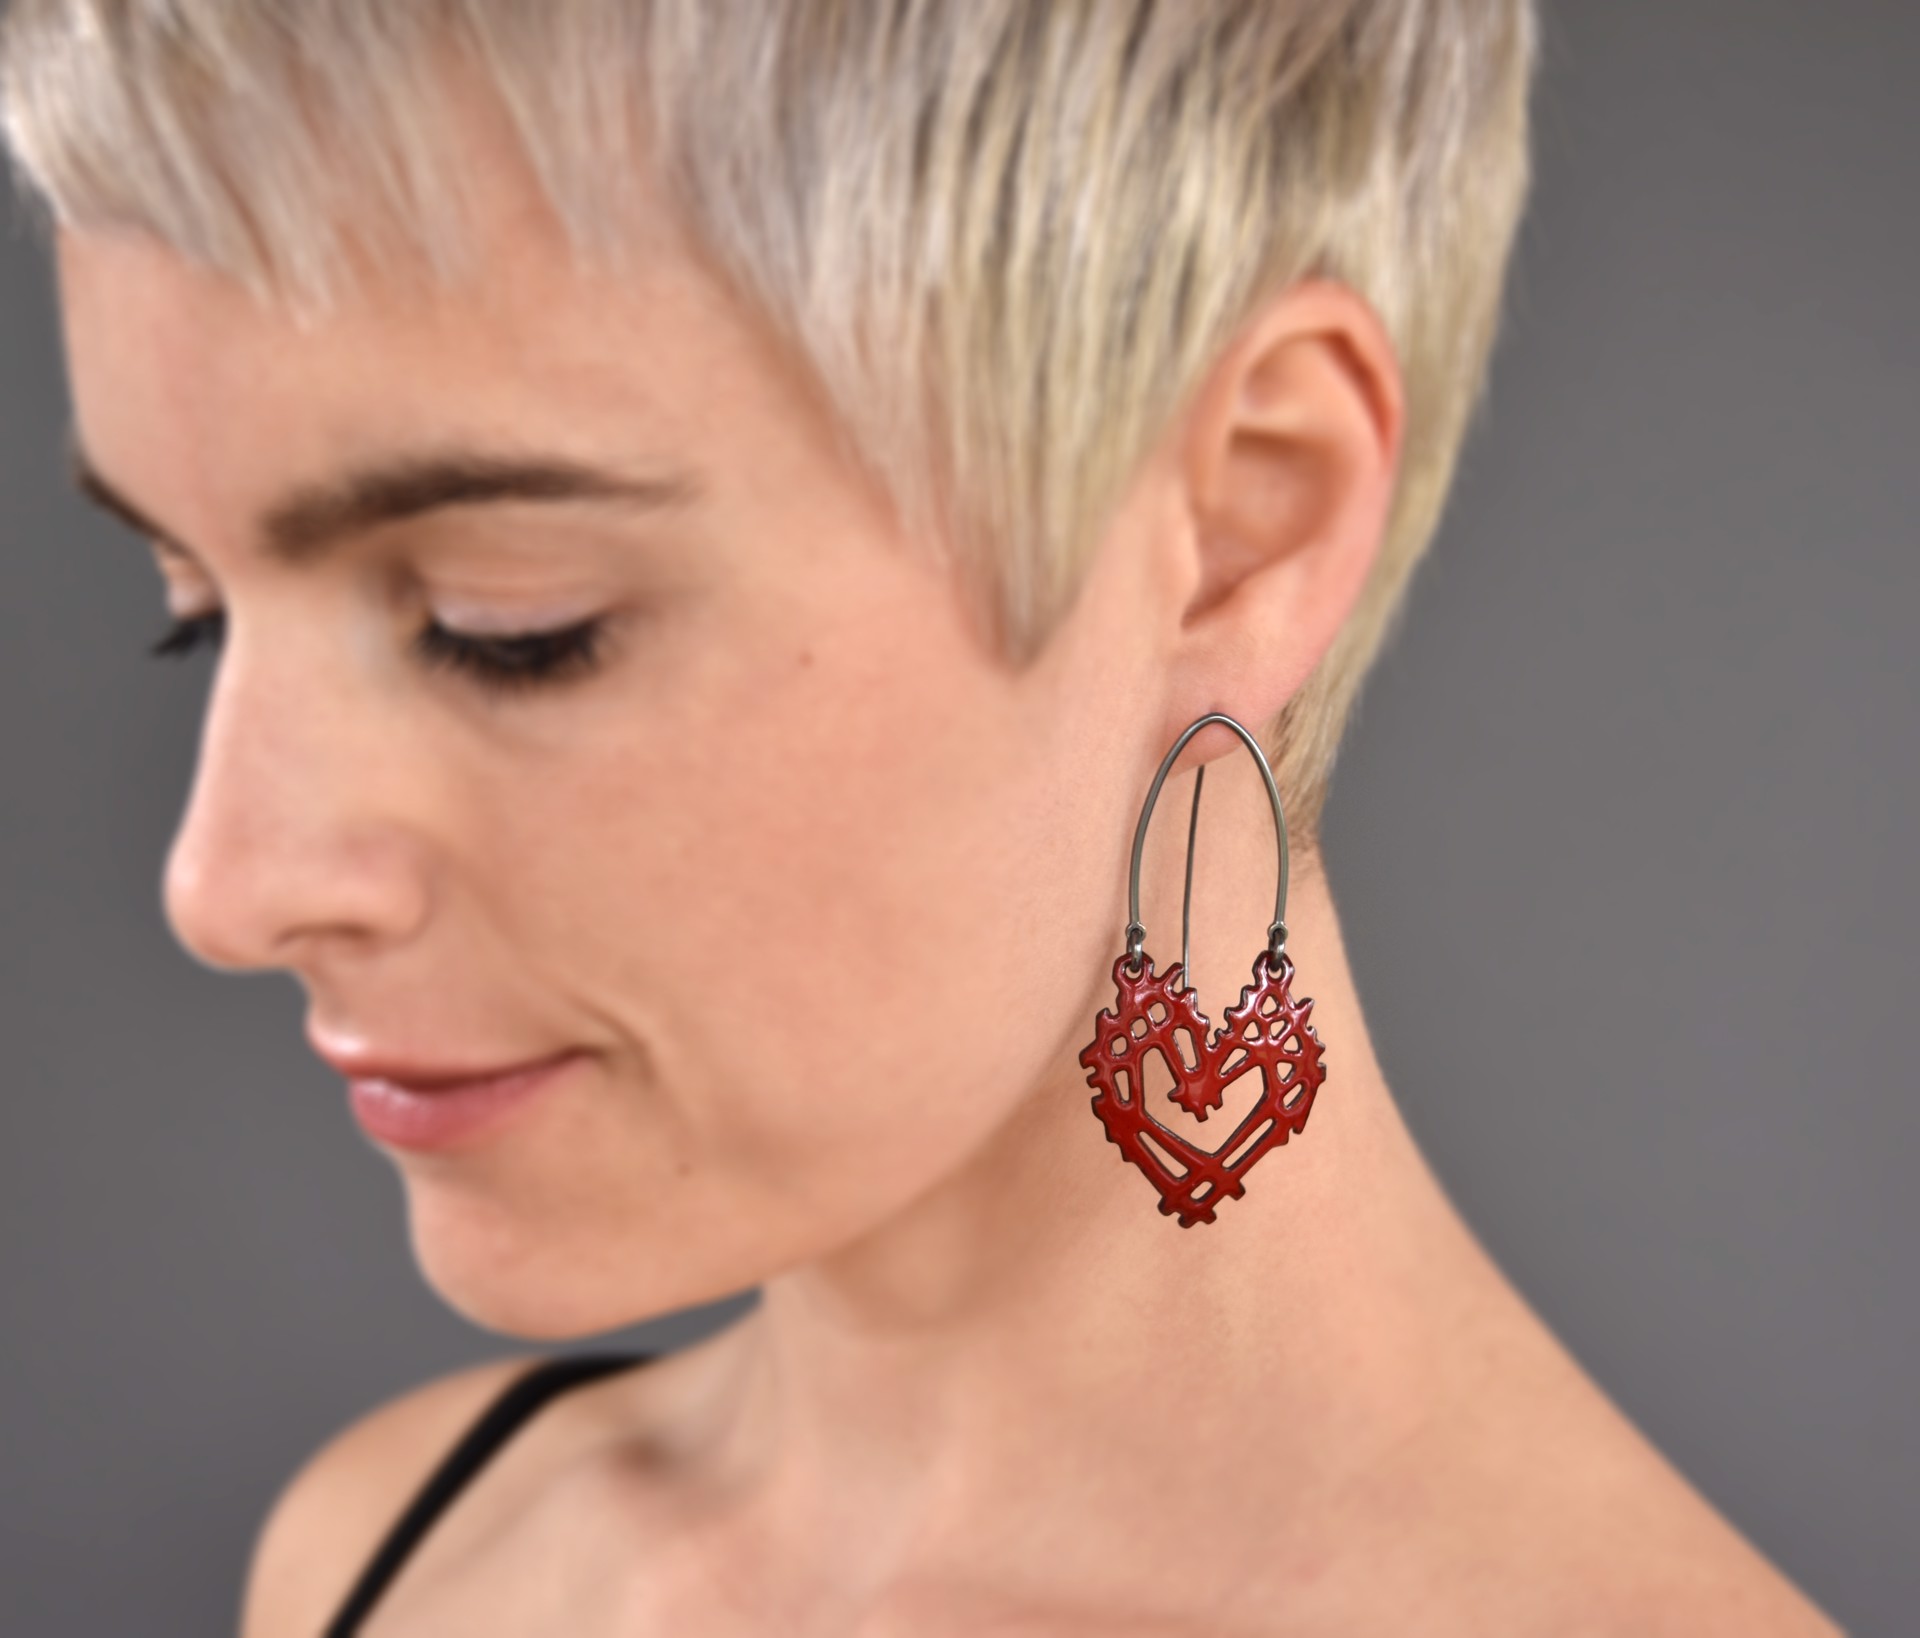 Stick & Stone Heart Earrings Earrings by Joanna Nealey